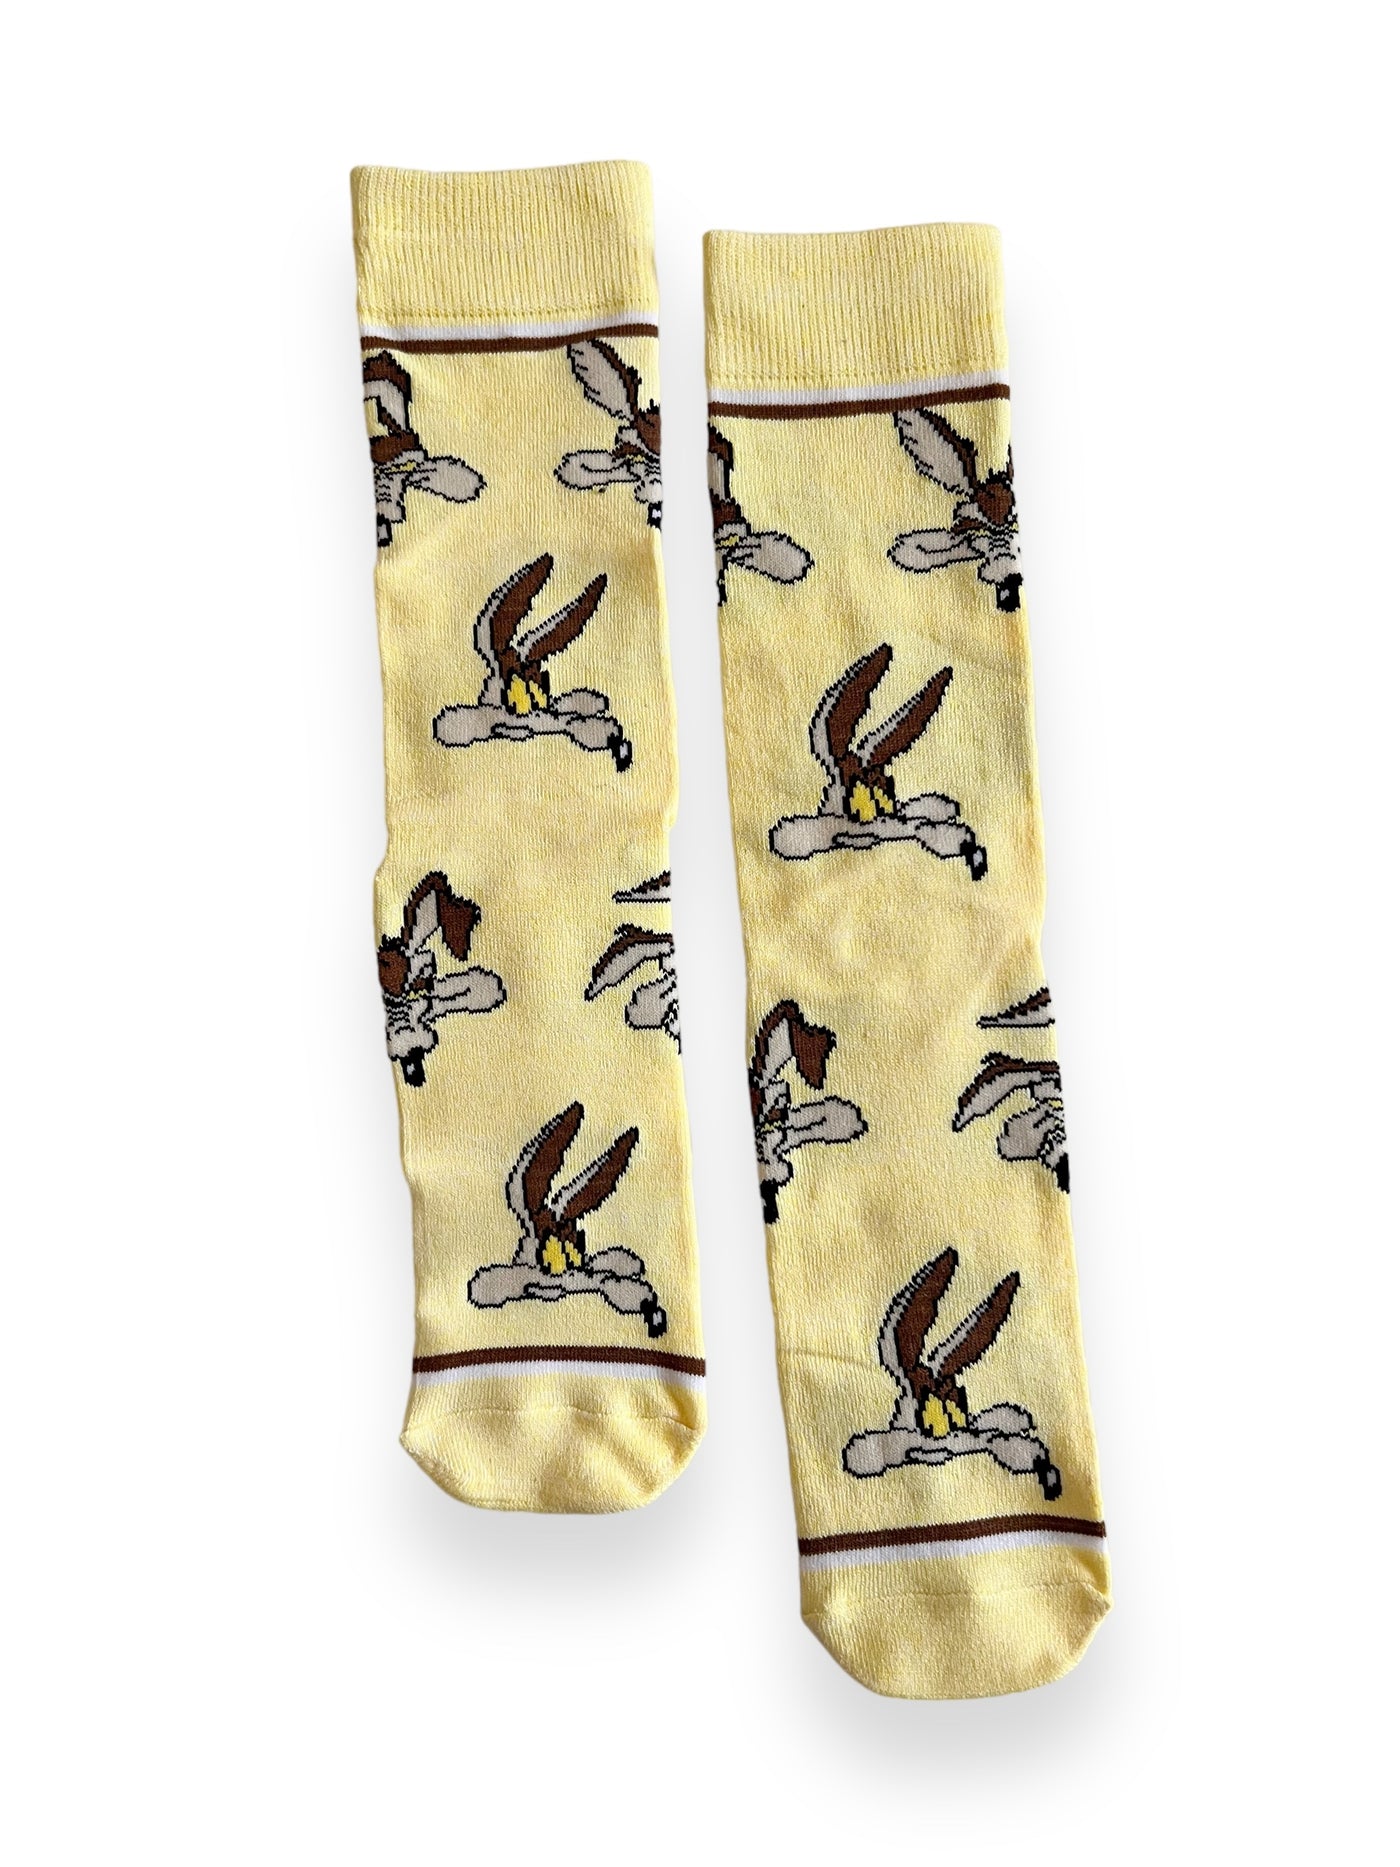 Looney Tunes crew socks - PROBOXS